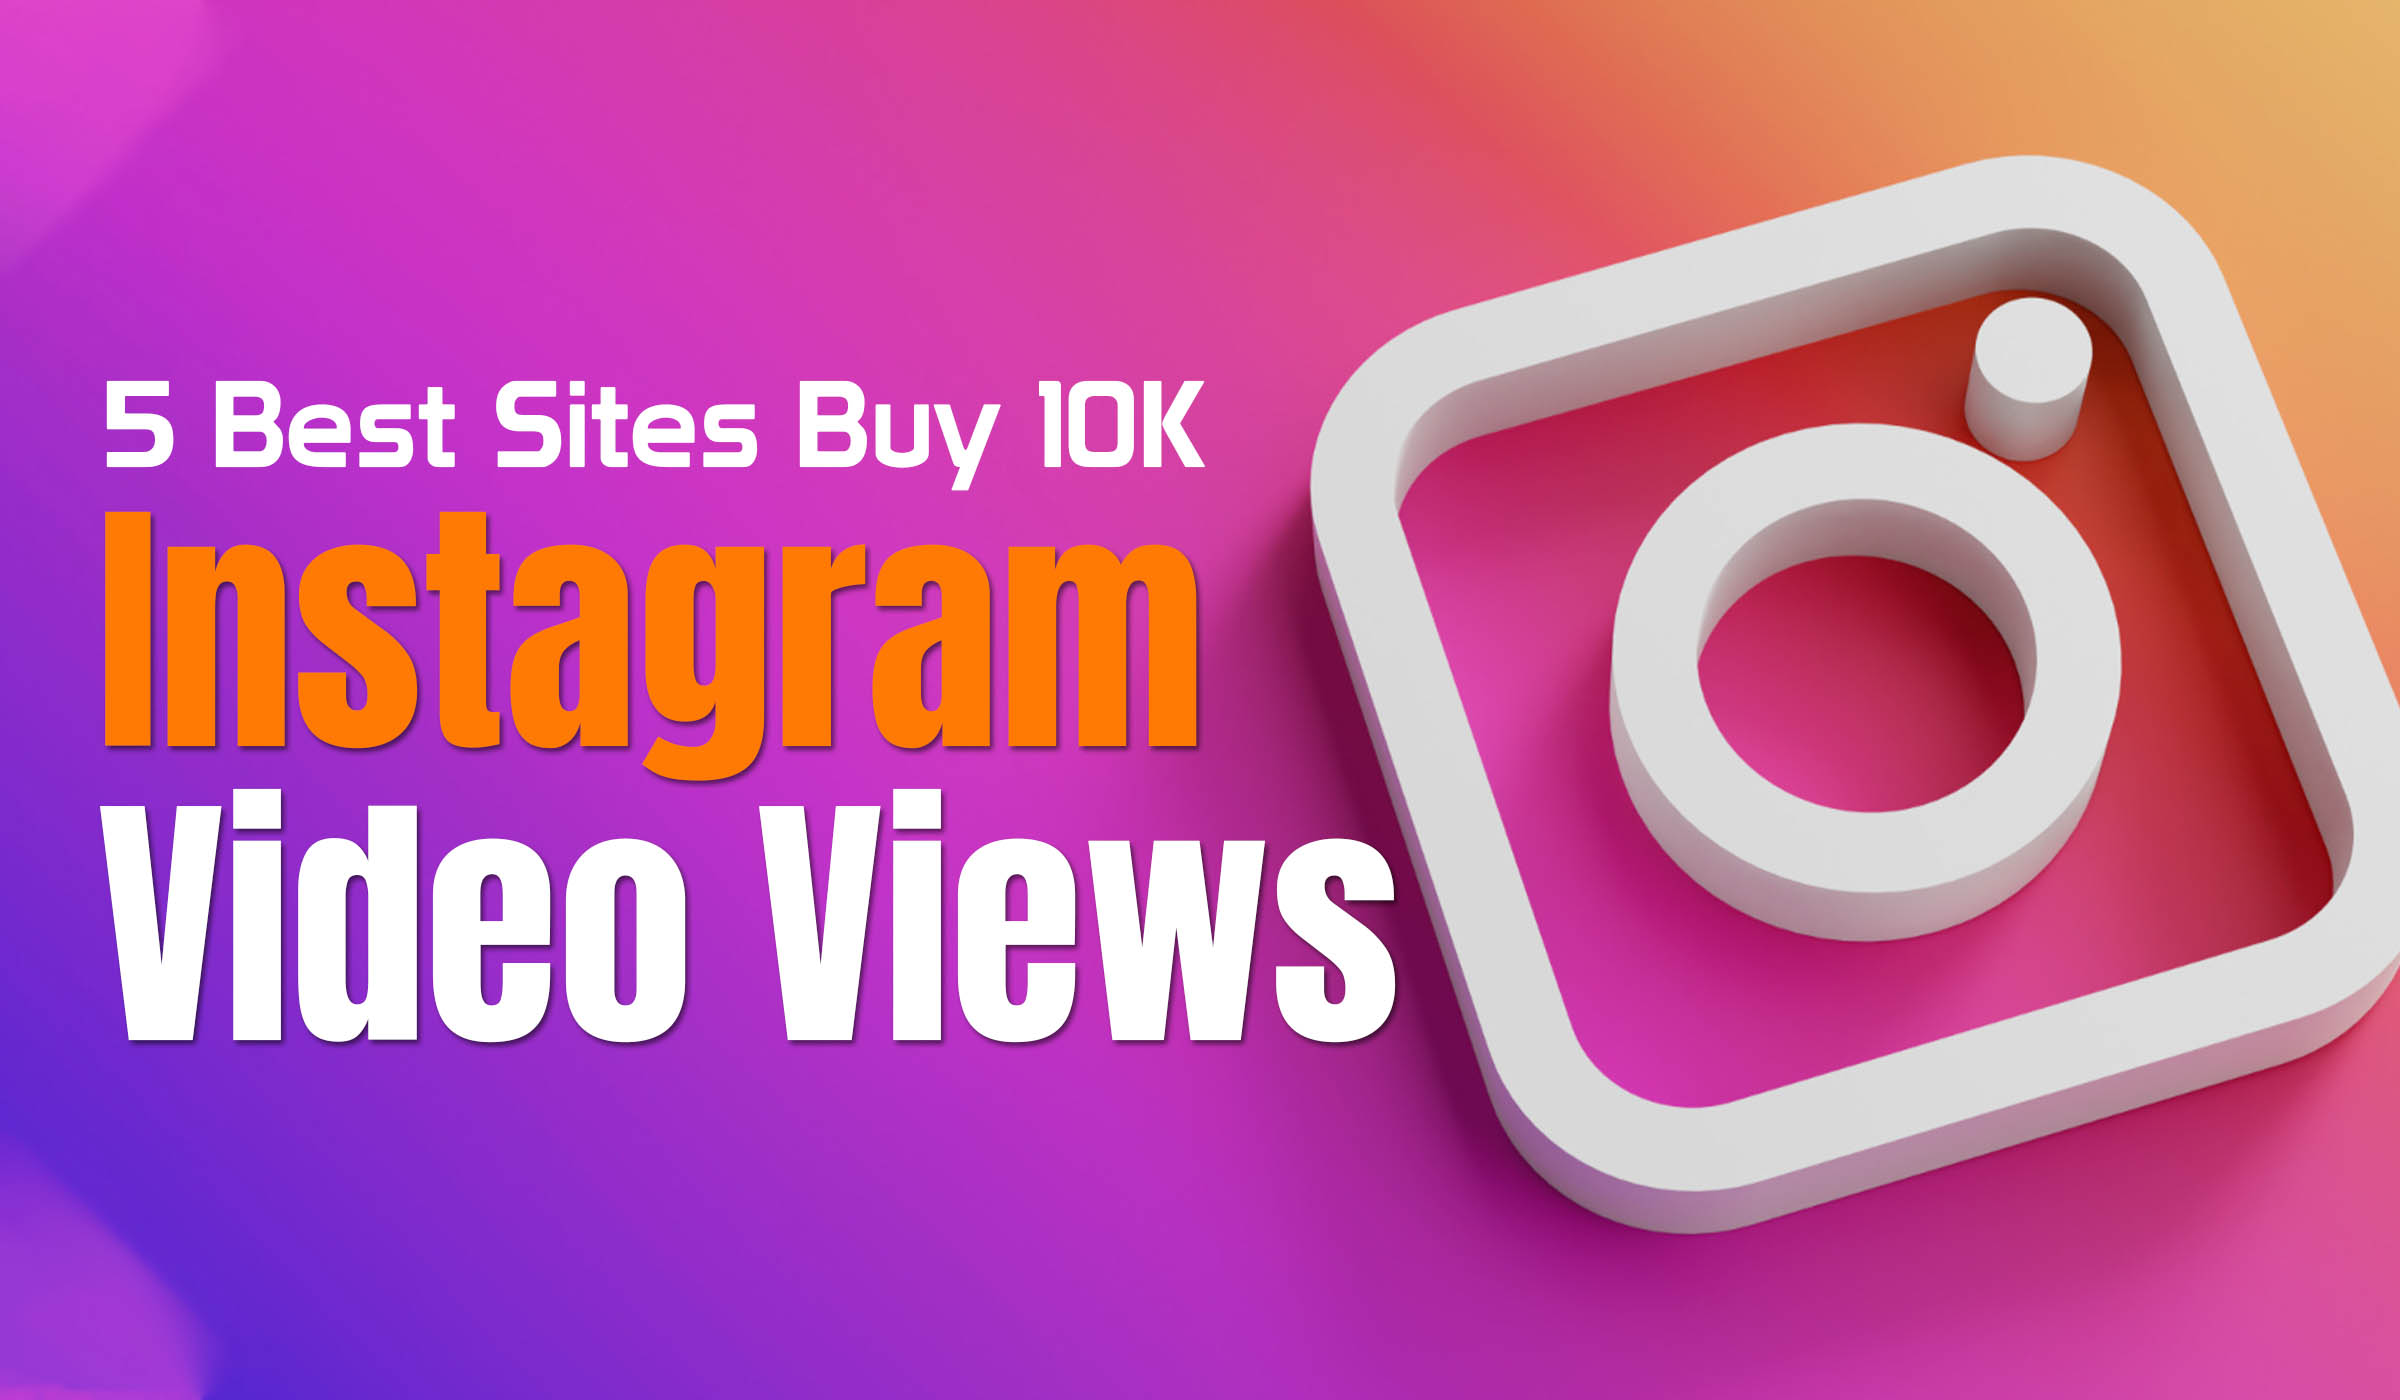 Buy 10K Instagram Video Views